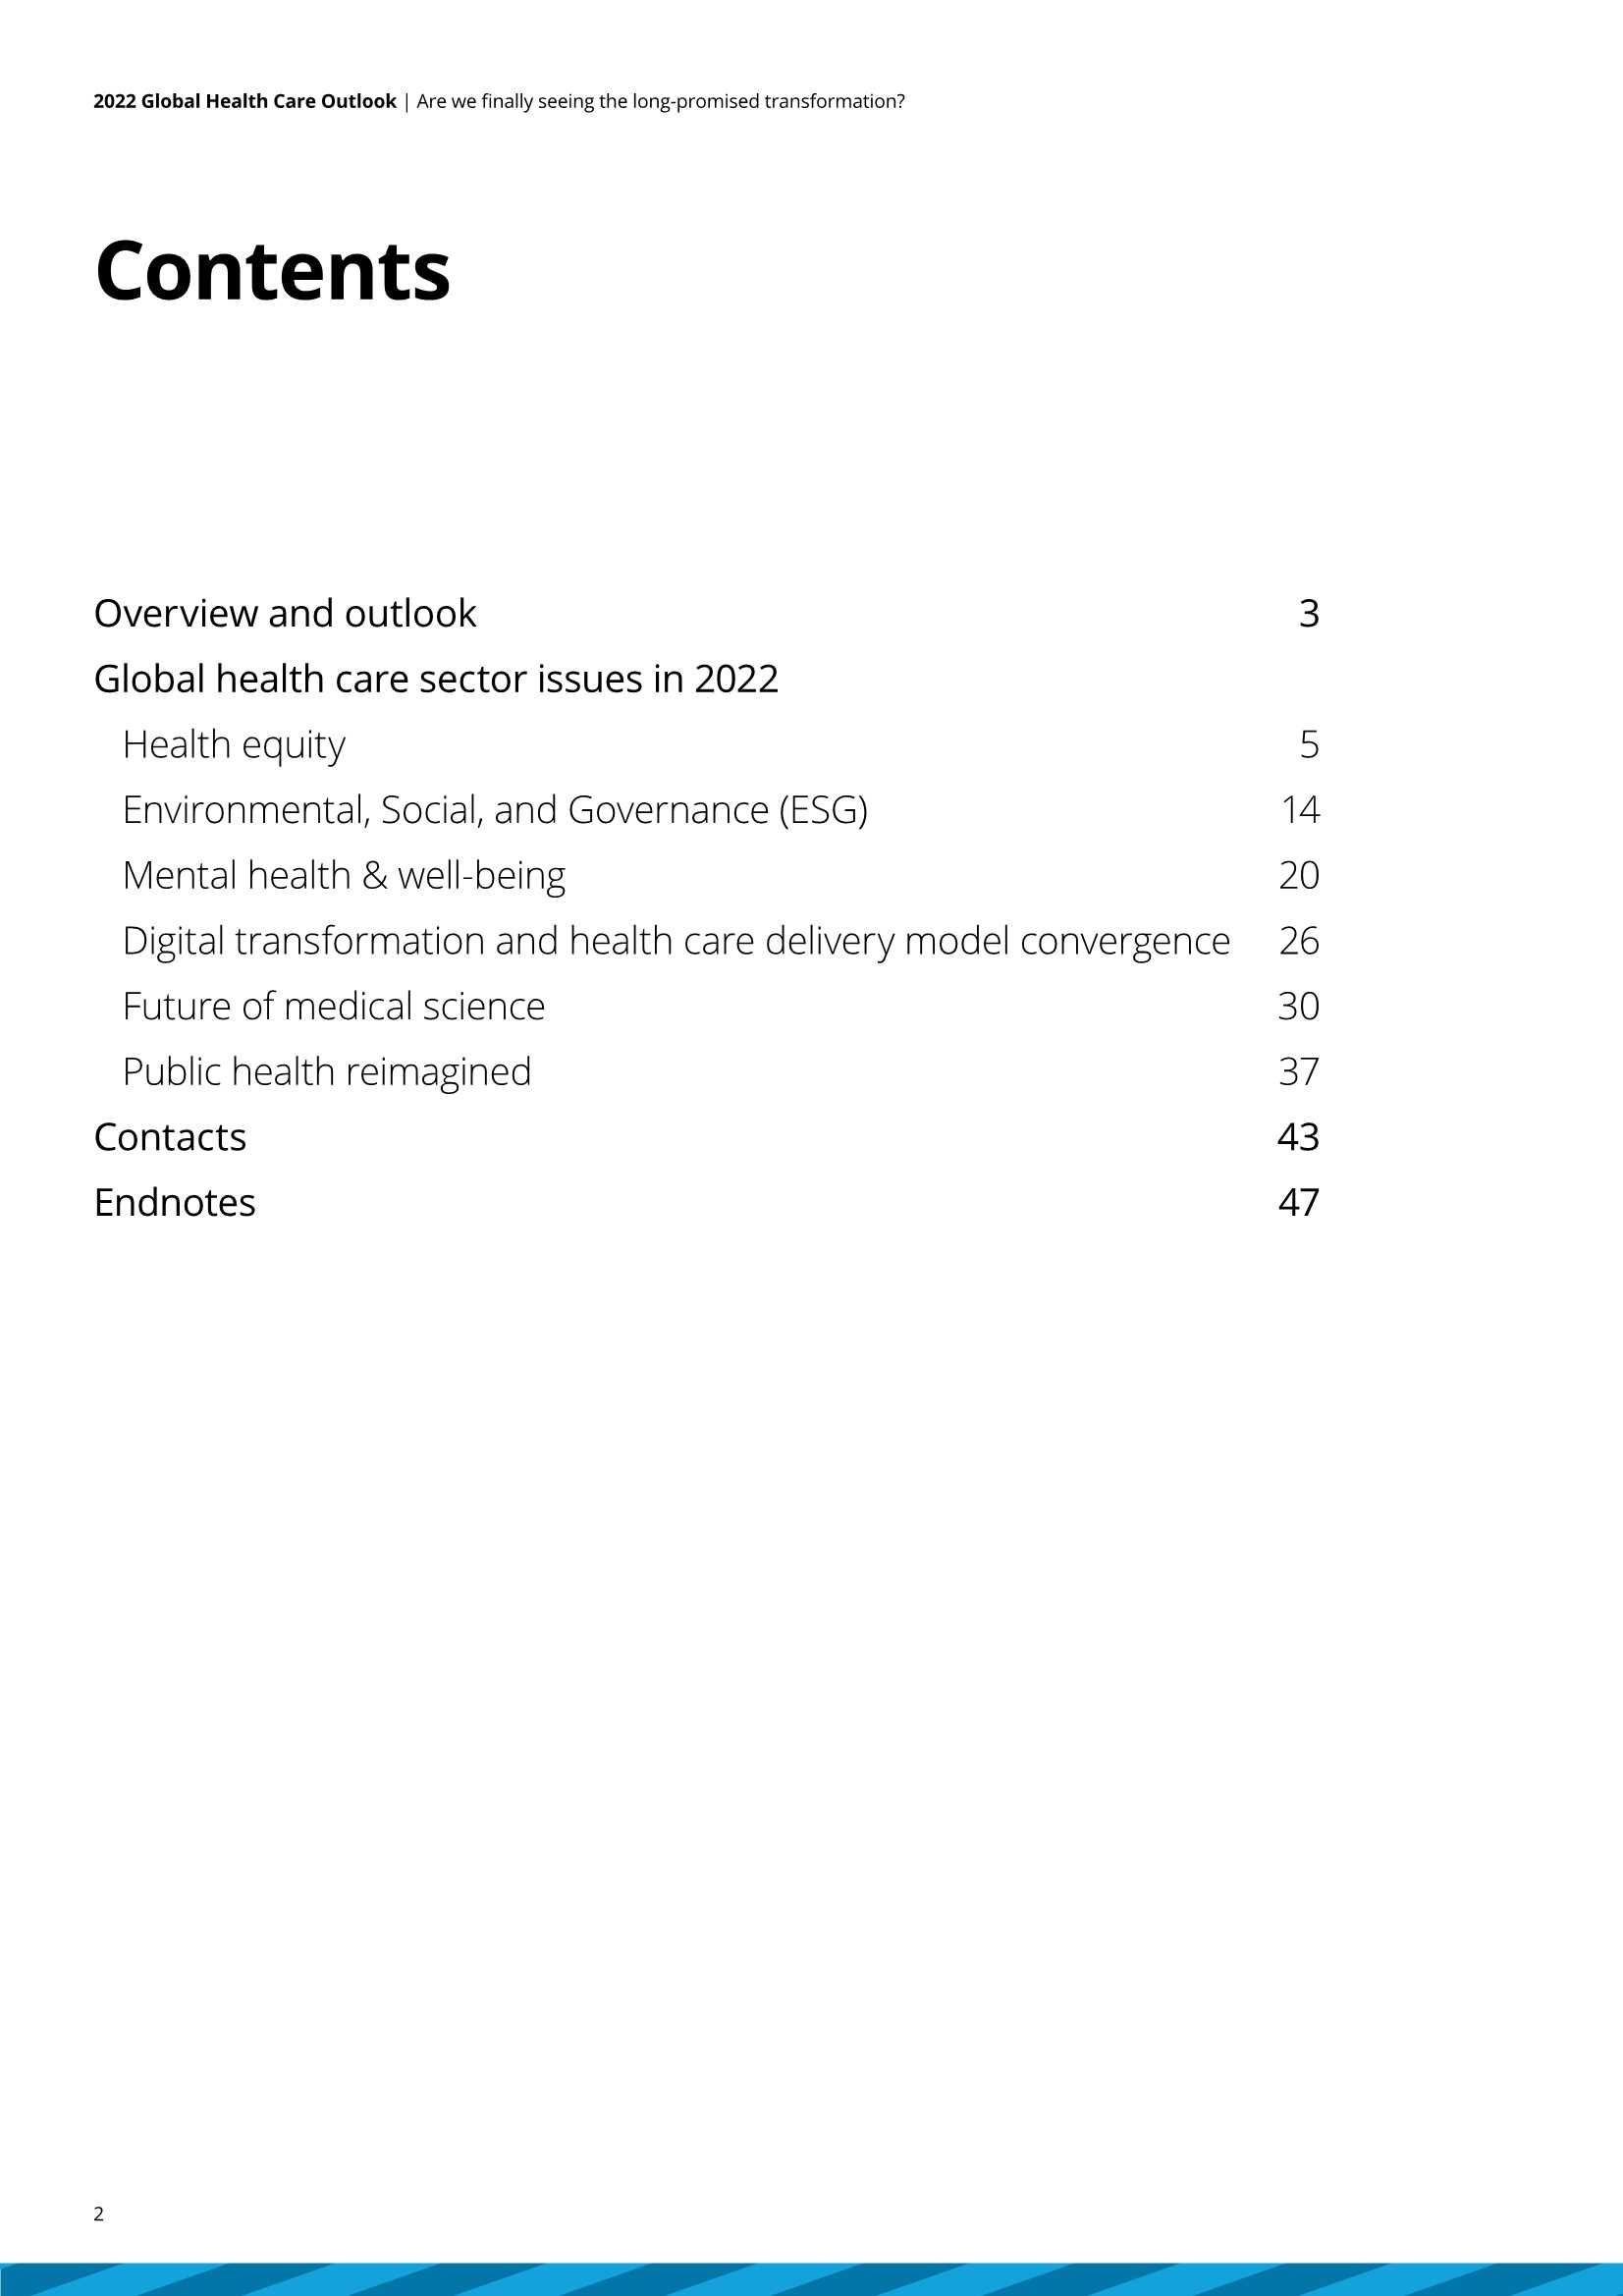 德勤-2022年全球医疗行业展望-2022.01-52页